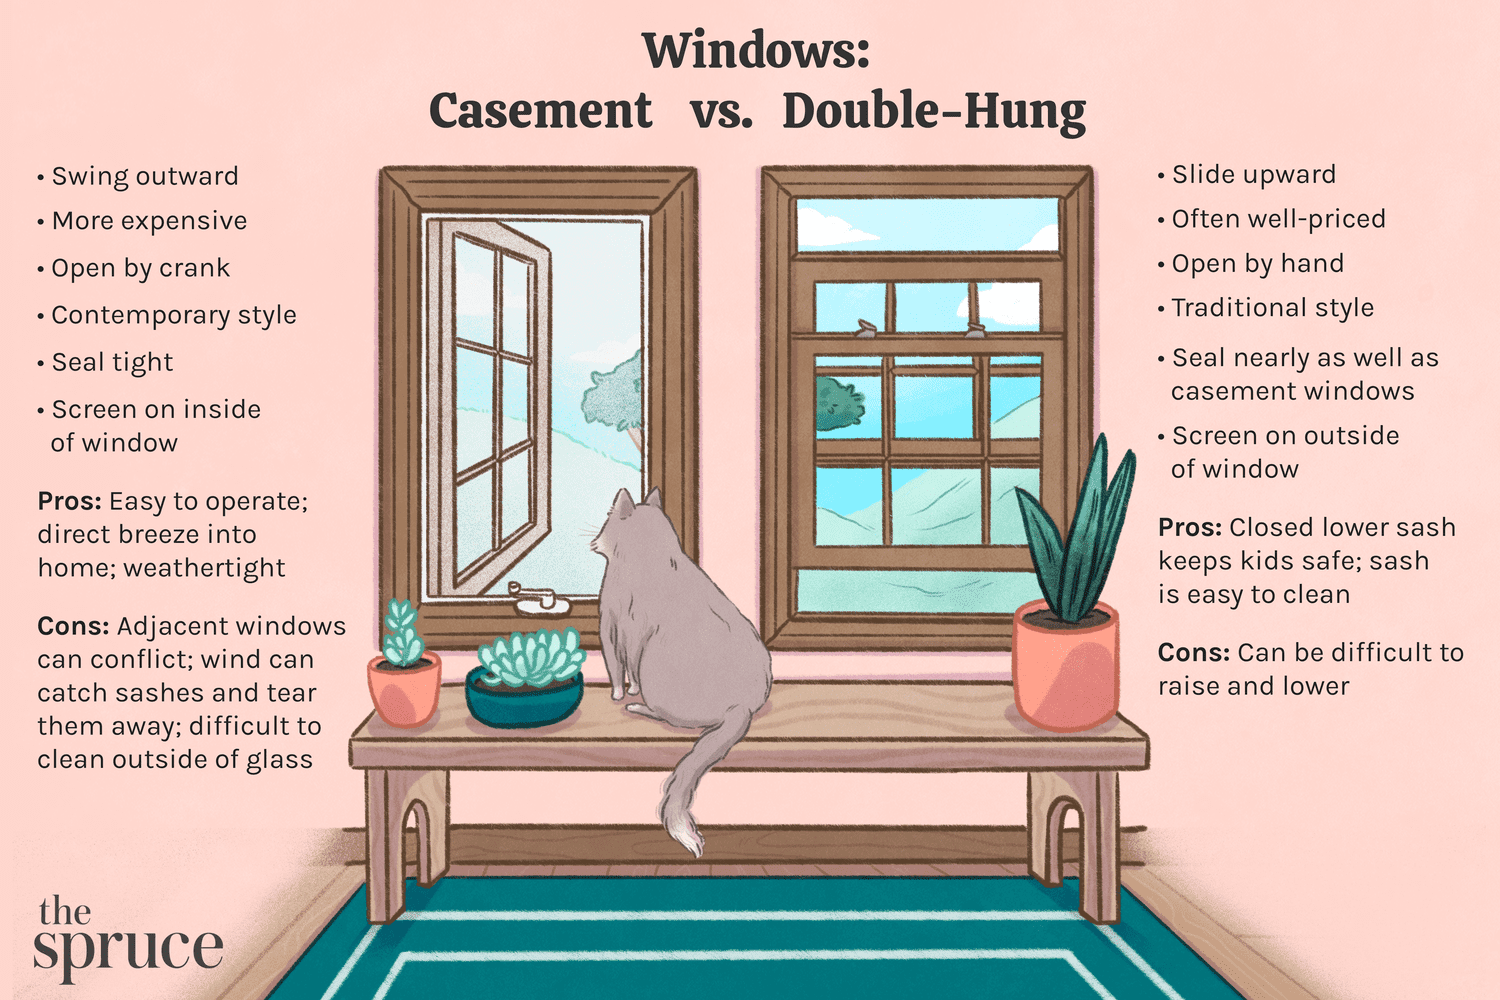 Casement vs. Double-Hung Windows